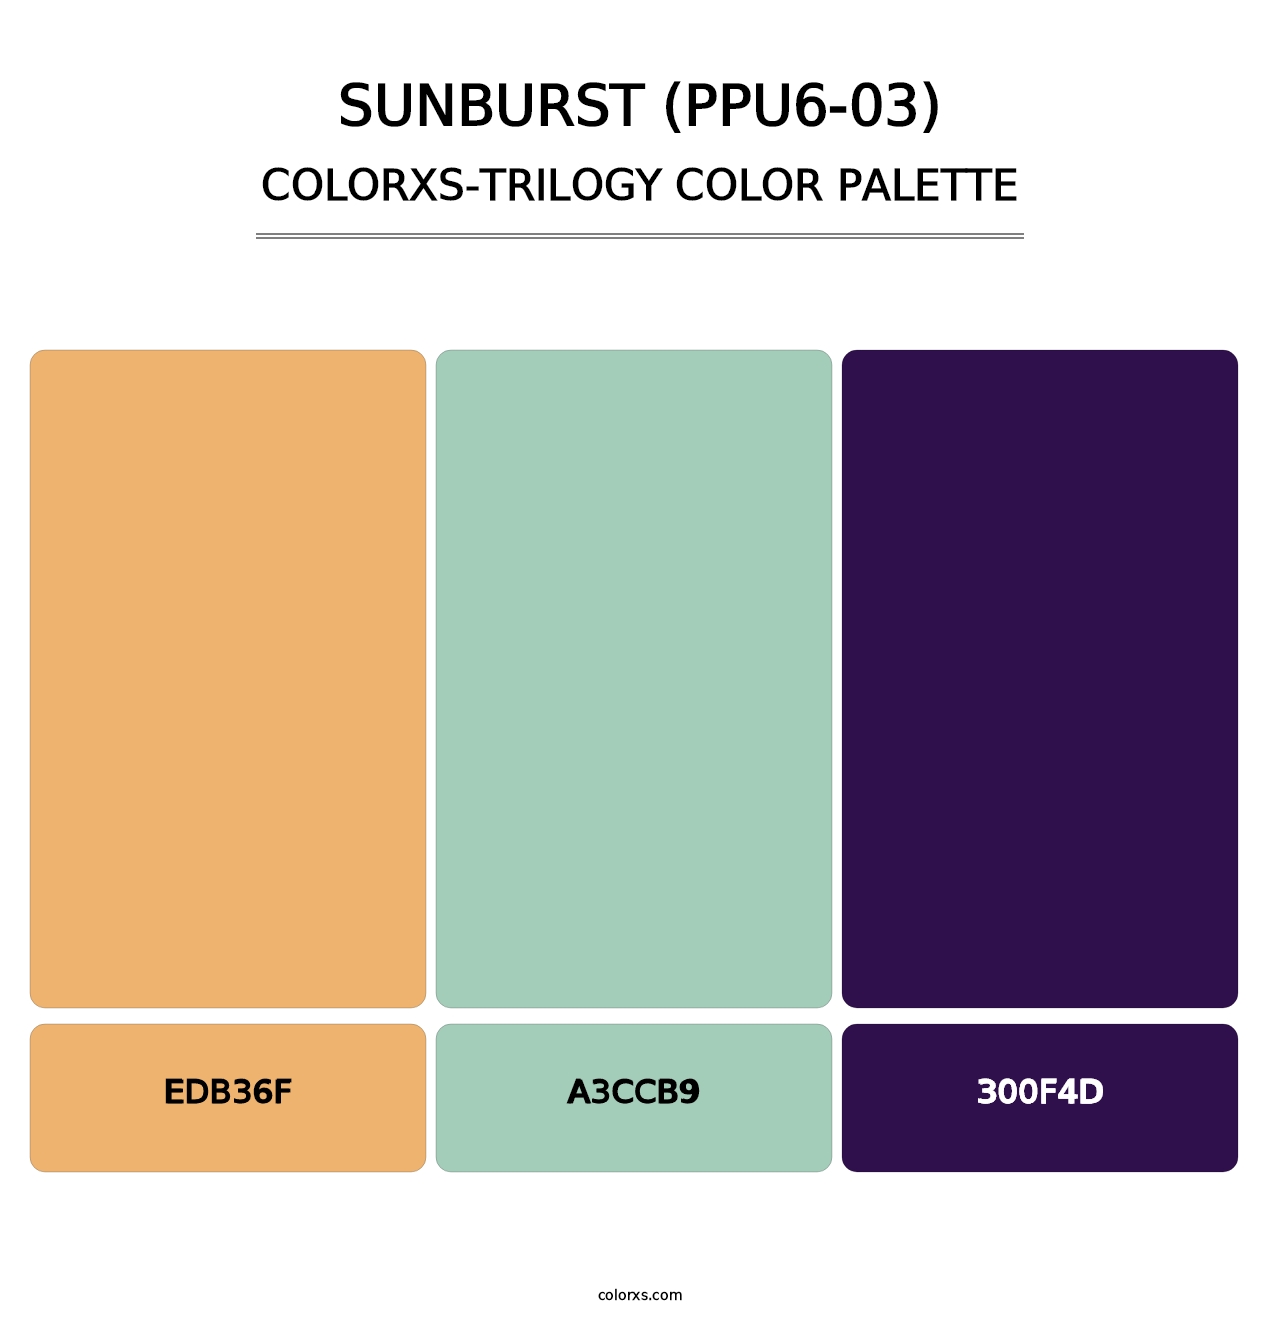 Sunburst (PPU6-03) - Colorxs Trilogy Palette